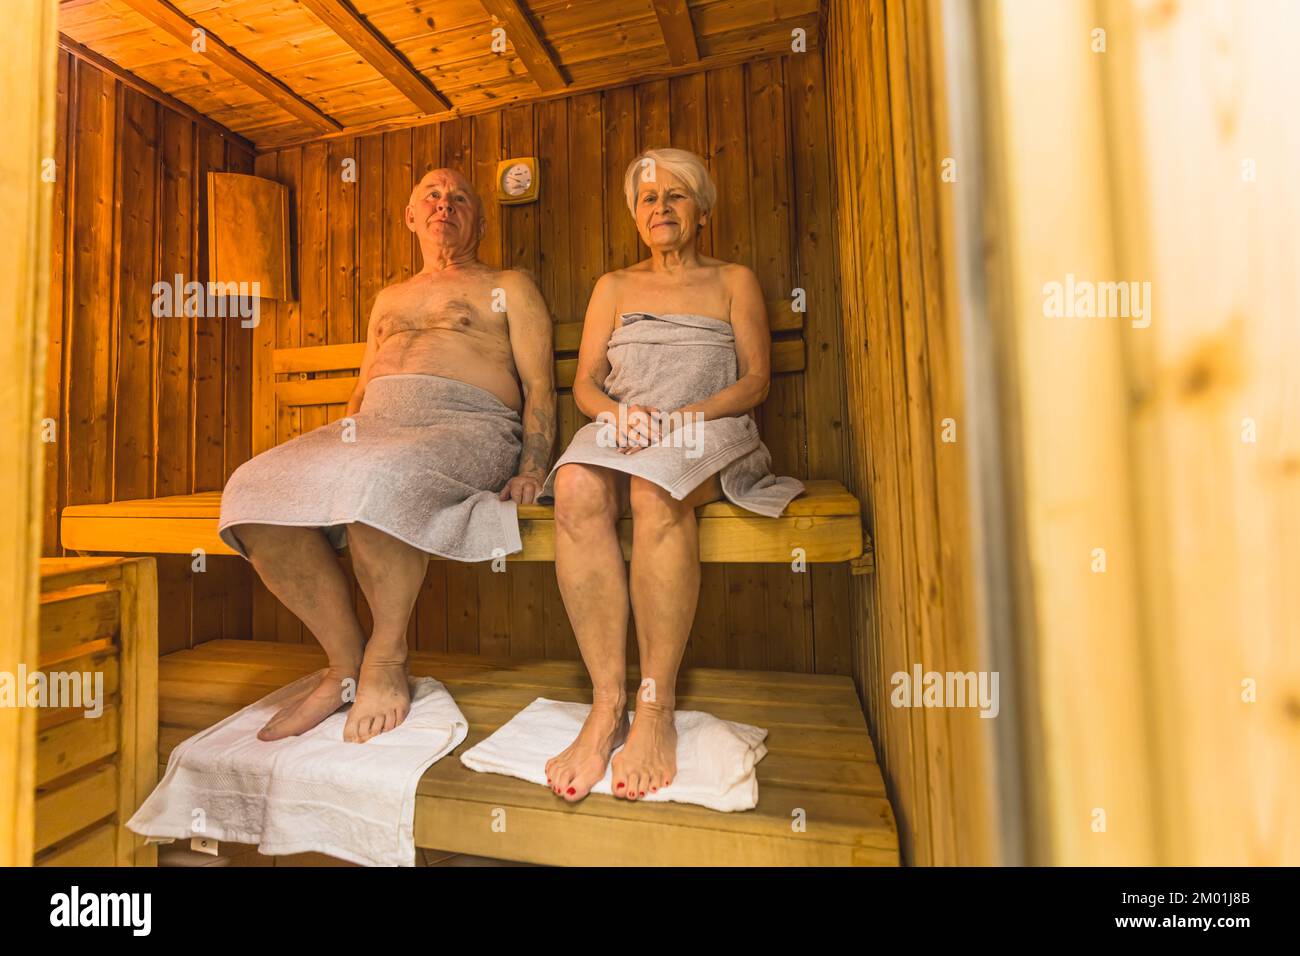 Concepto de ocio y relajación. Plano interior completo de dos abuelos blancos que se sientan en una sauna de madera con toallas bajo sus pies. Fotografía de alta calidad Foto de stock